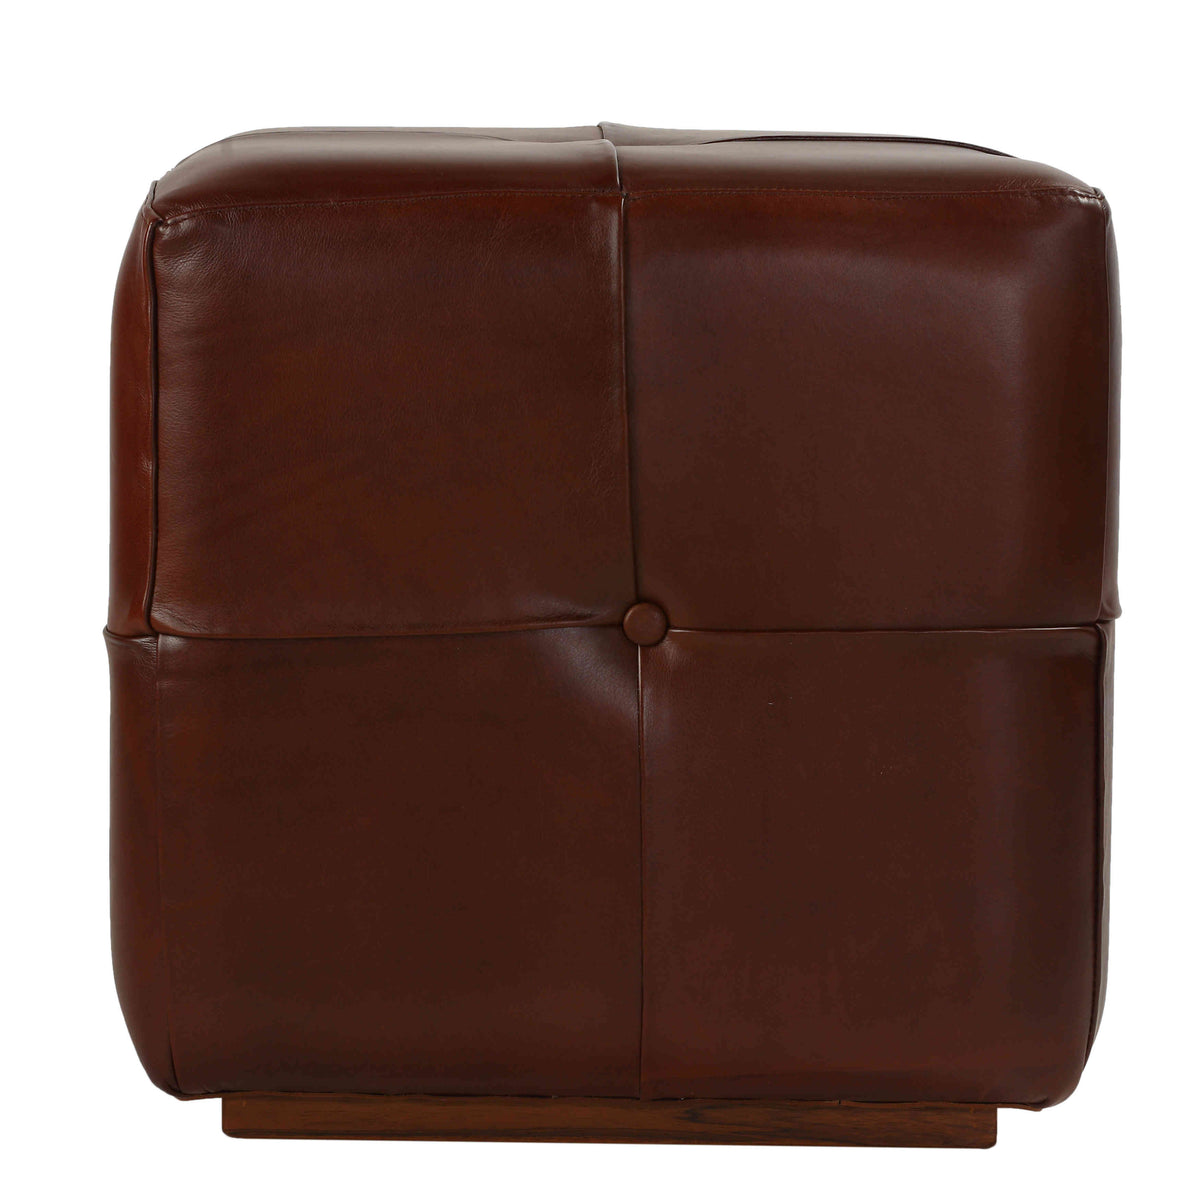 Bare Decor Chesterfield Square Ottoman, Genuine 100% Leather, Brown